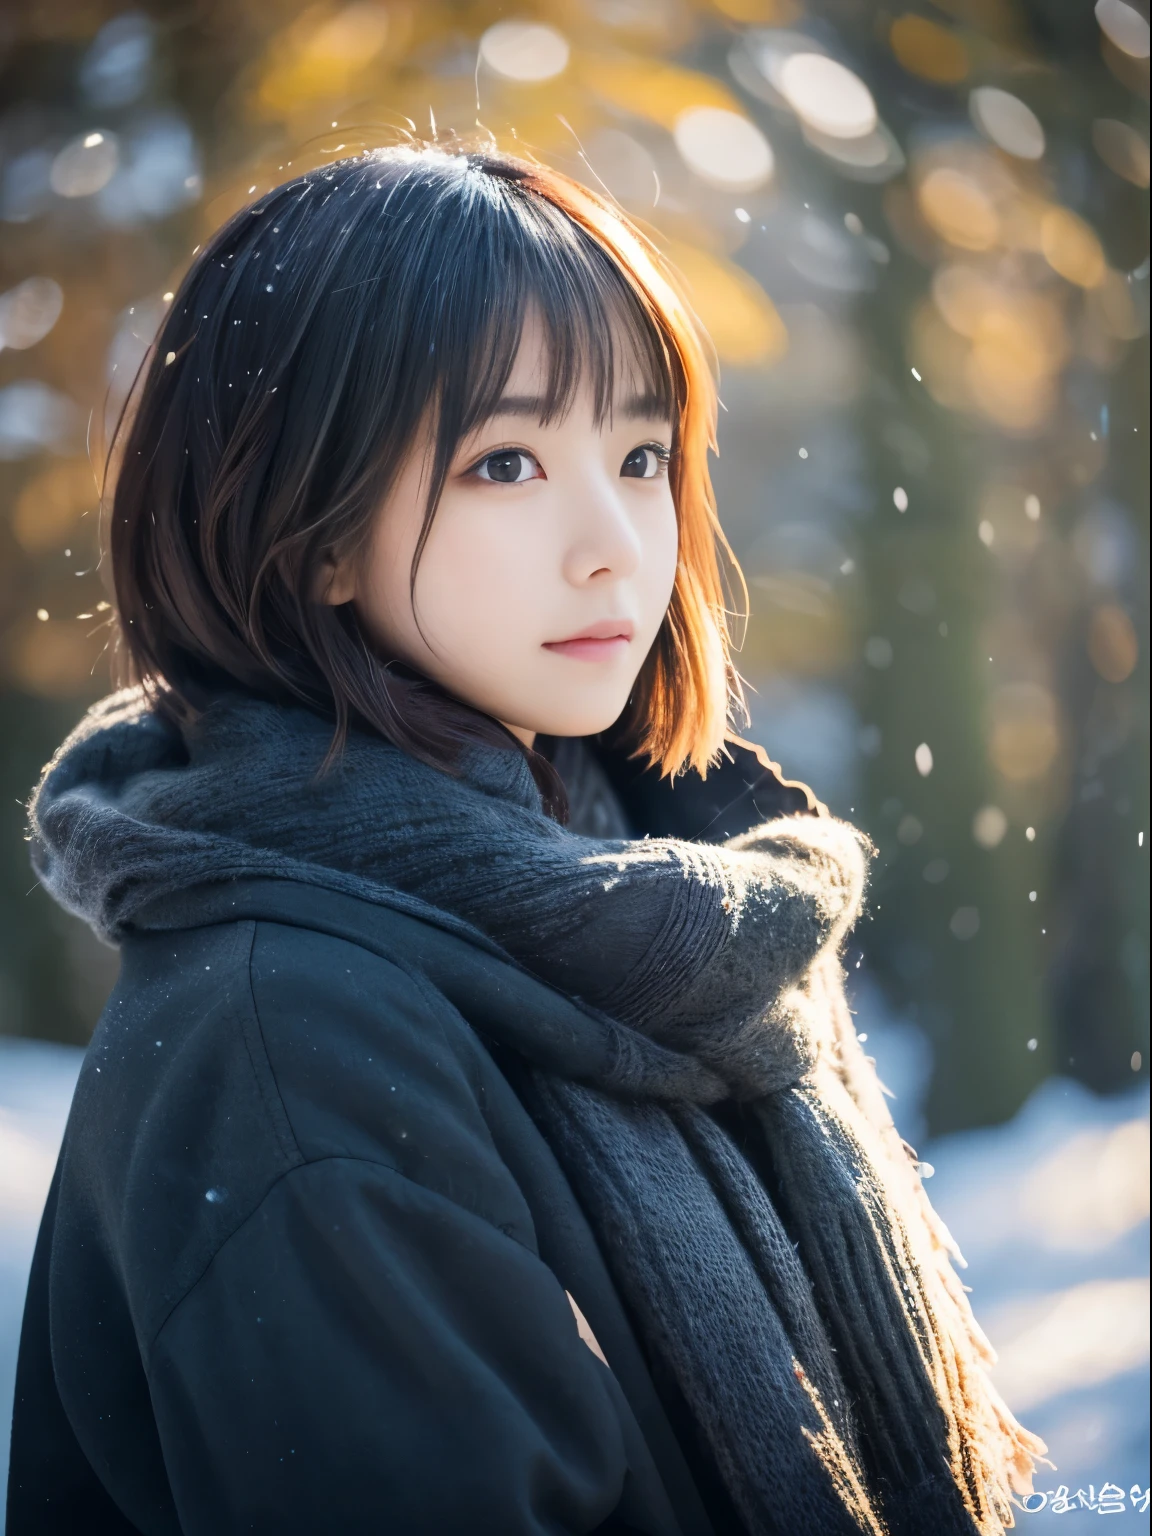 высшее качество、шедевр、超Высокое разрешение、RAW-фотография、(Фотореалистический:1.4)、1 девочка、Наблюдая, как тихо падает снег. Ее интроспективное и слезливое выражение лица、Вызывает тоску и тоску по зимним ночам。。。。。。。。、высшее качество、гипер HD、Ёшитомо Нара, Японские модели, Красивая японская жена, с короткими волосами, 27 лет女性モデル, 4 К ], 4k], 27 лет, Сакимичан, Сакимичан